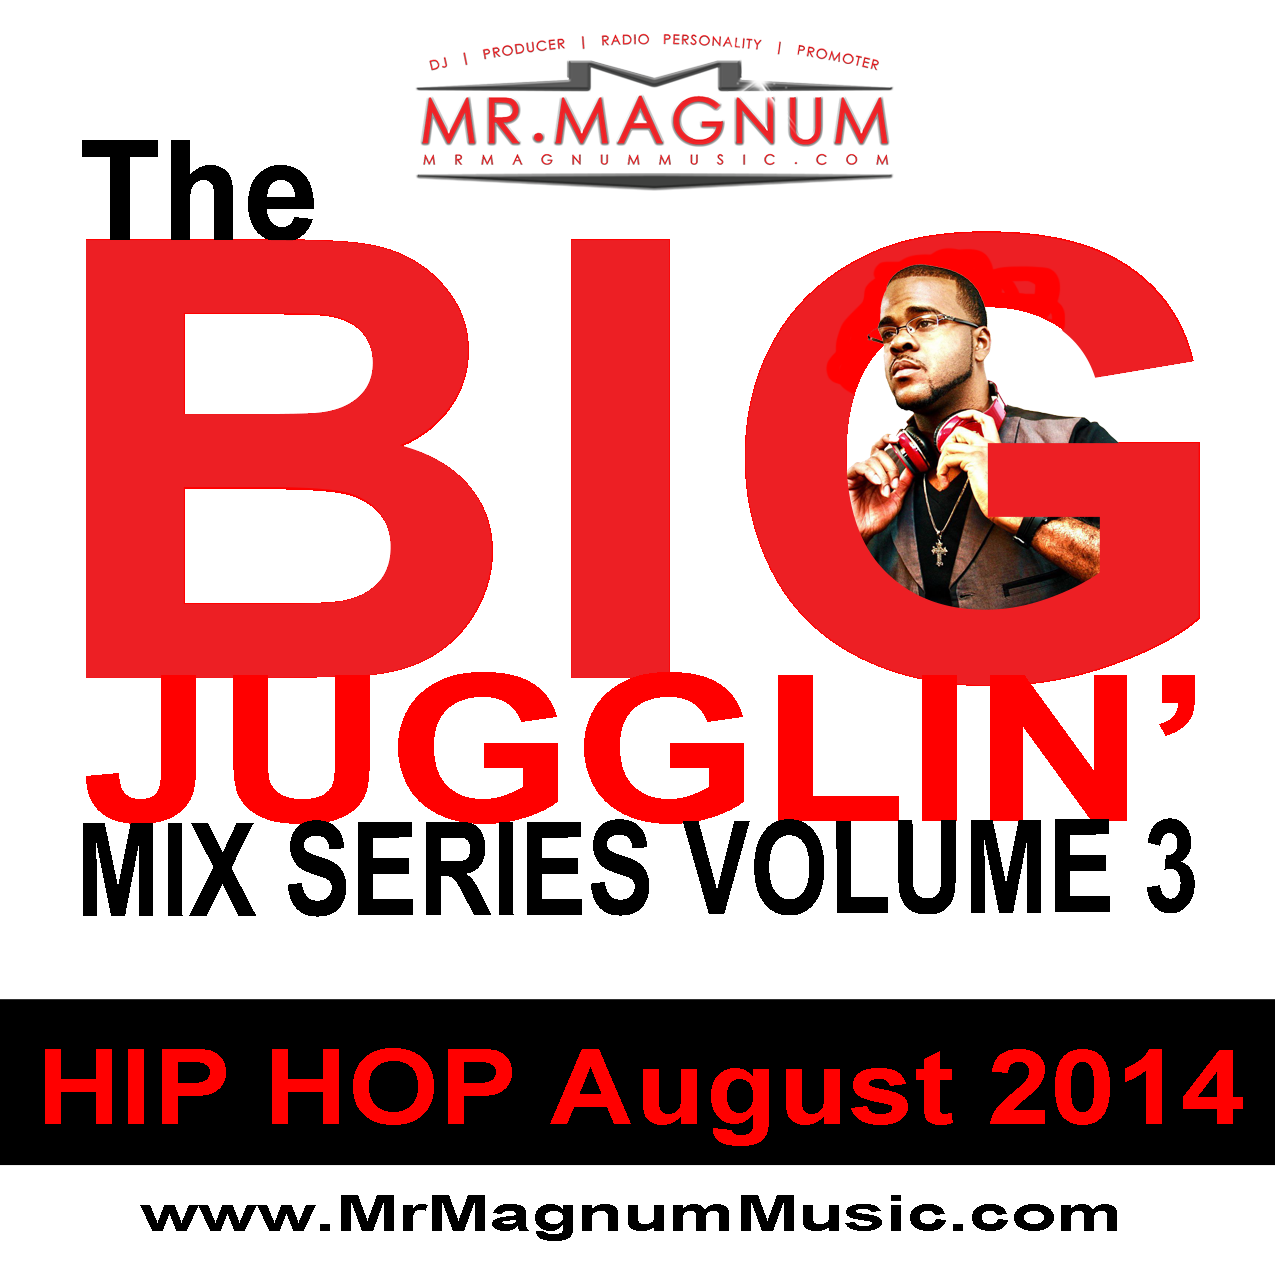 Mr. Magnum - The Big Jugglin' Mix Series Vol 3 Hip Hop August 2014